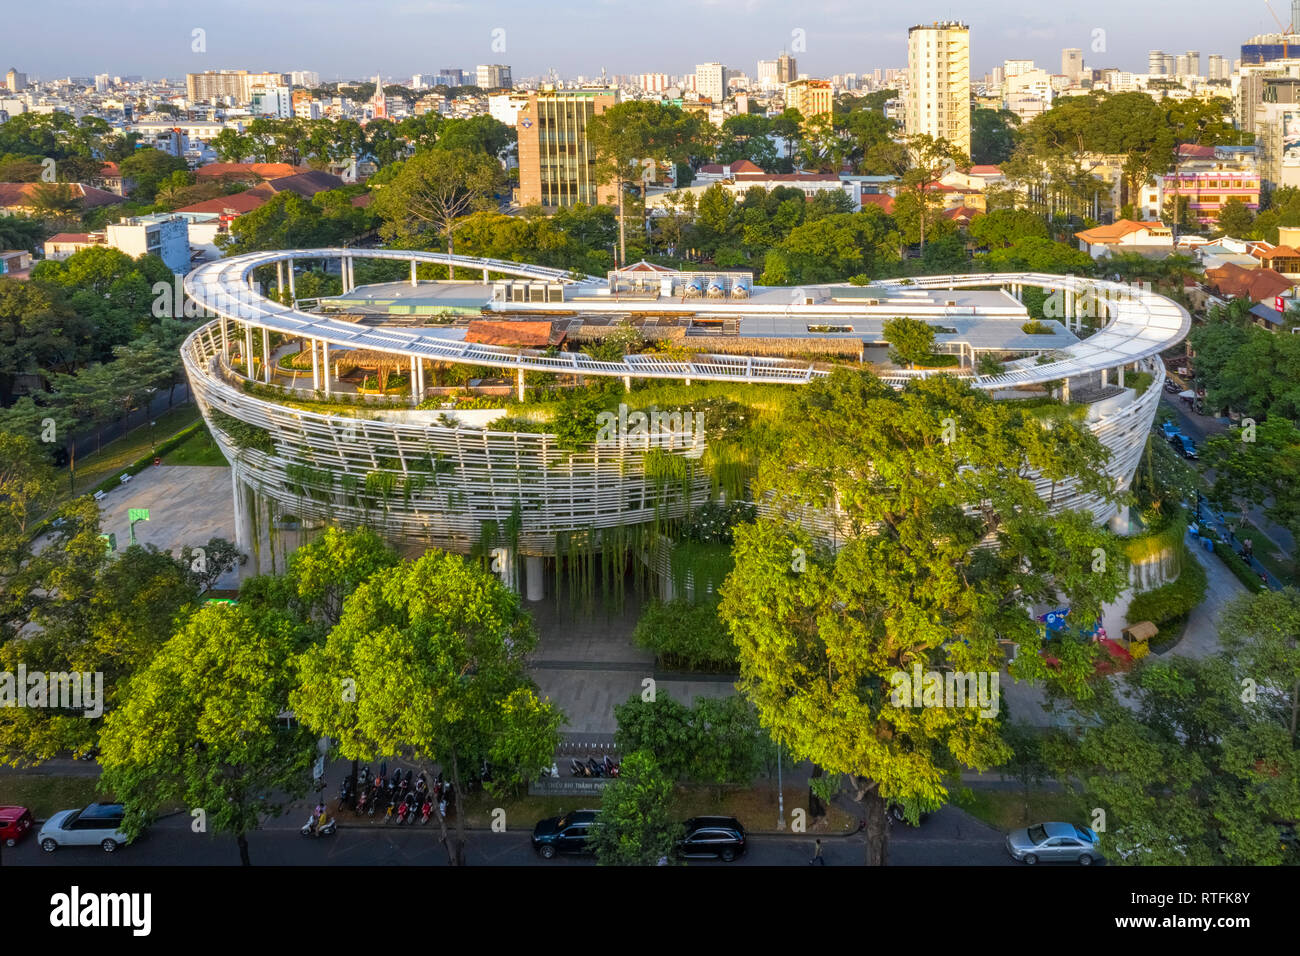 Vista superior de la antena de la casa de la cultura de los niños de la calle Le Quy Don, Ho Chi Minh, con el desarrollo de edificios, transporte. Vietnam Foto de stock